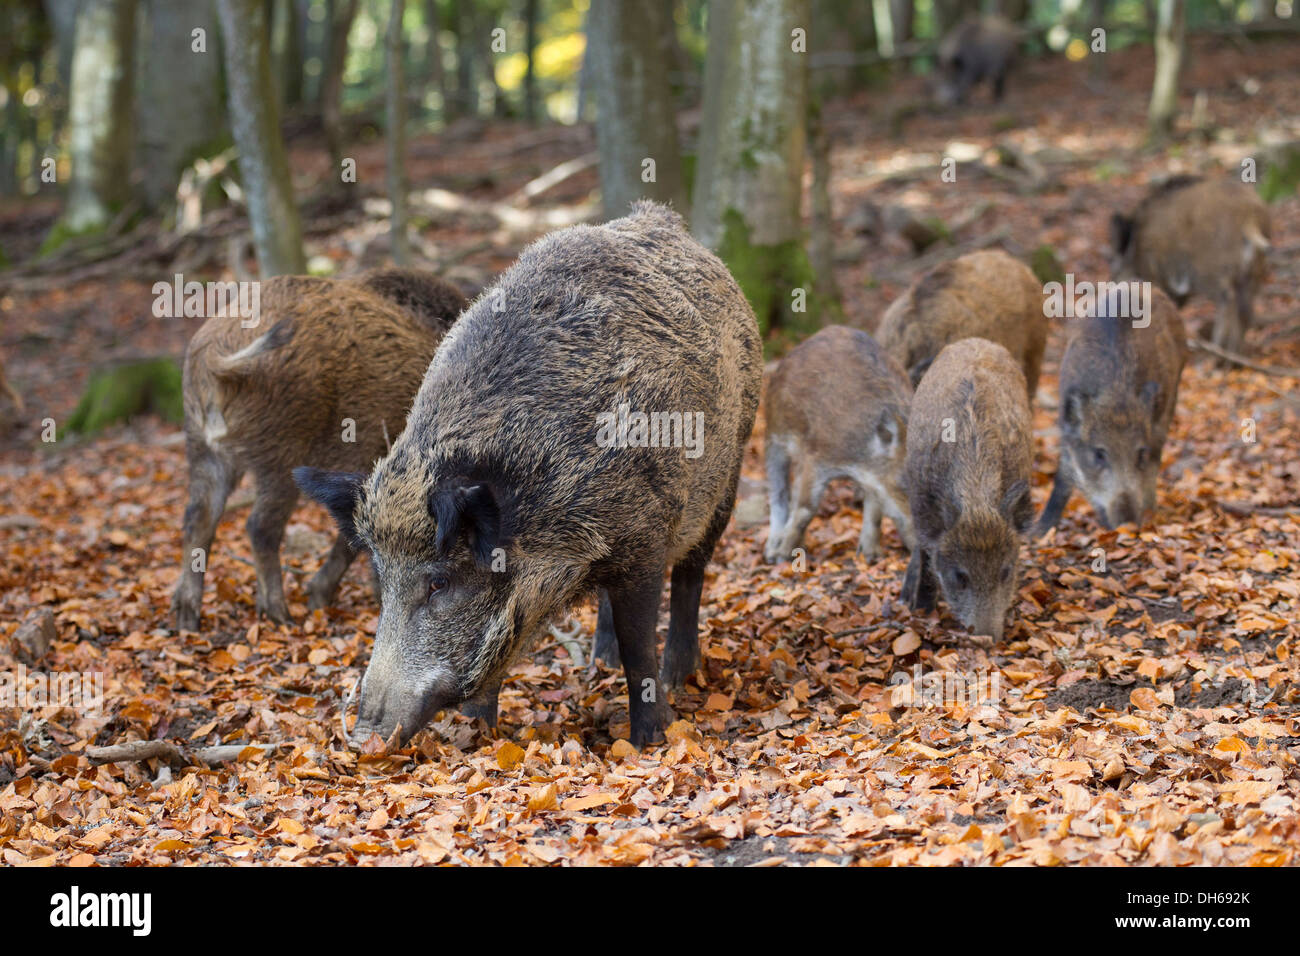 Le sanglier (Sus scrofa), parc animalier de Daun Vulkaneifel, district, Rhénanie-Palatinat Banque D'Images